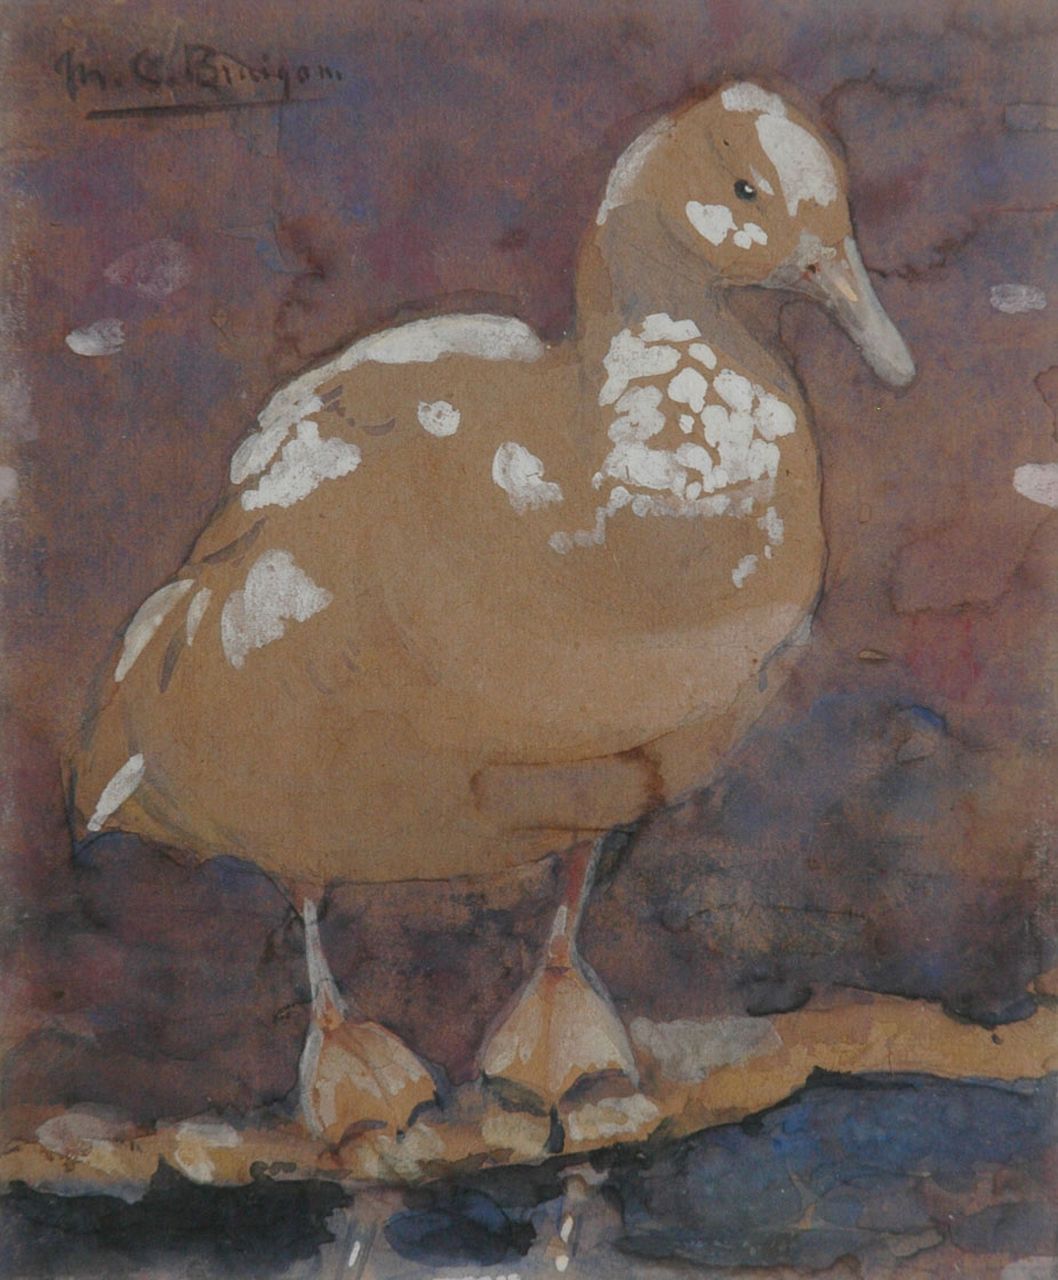 Bruigom M.C.  | Margaretha Cornelia 'Greta' Bruigom, A duck, Aquarell auf Papier 17,5 x 14,4 cm, signed u.l.